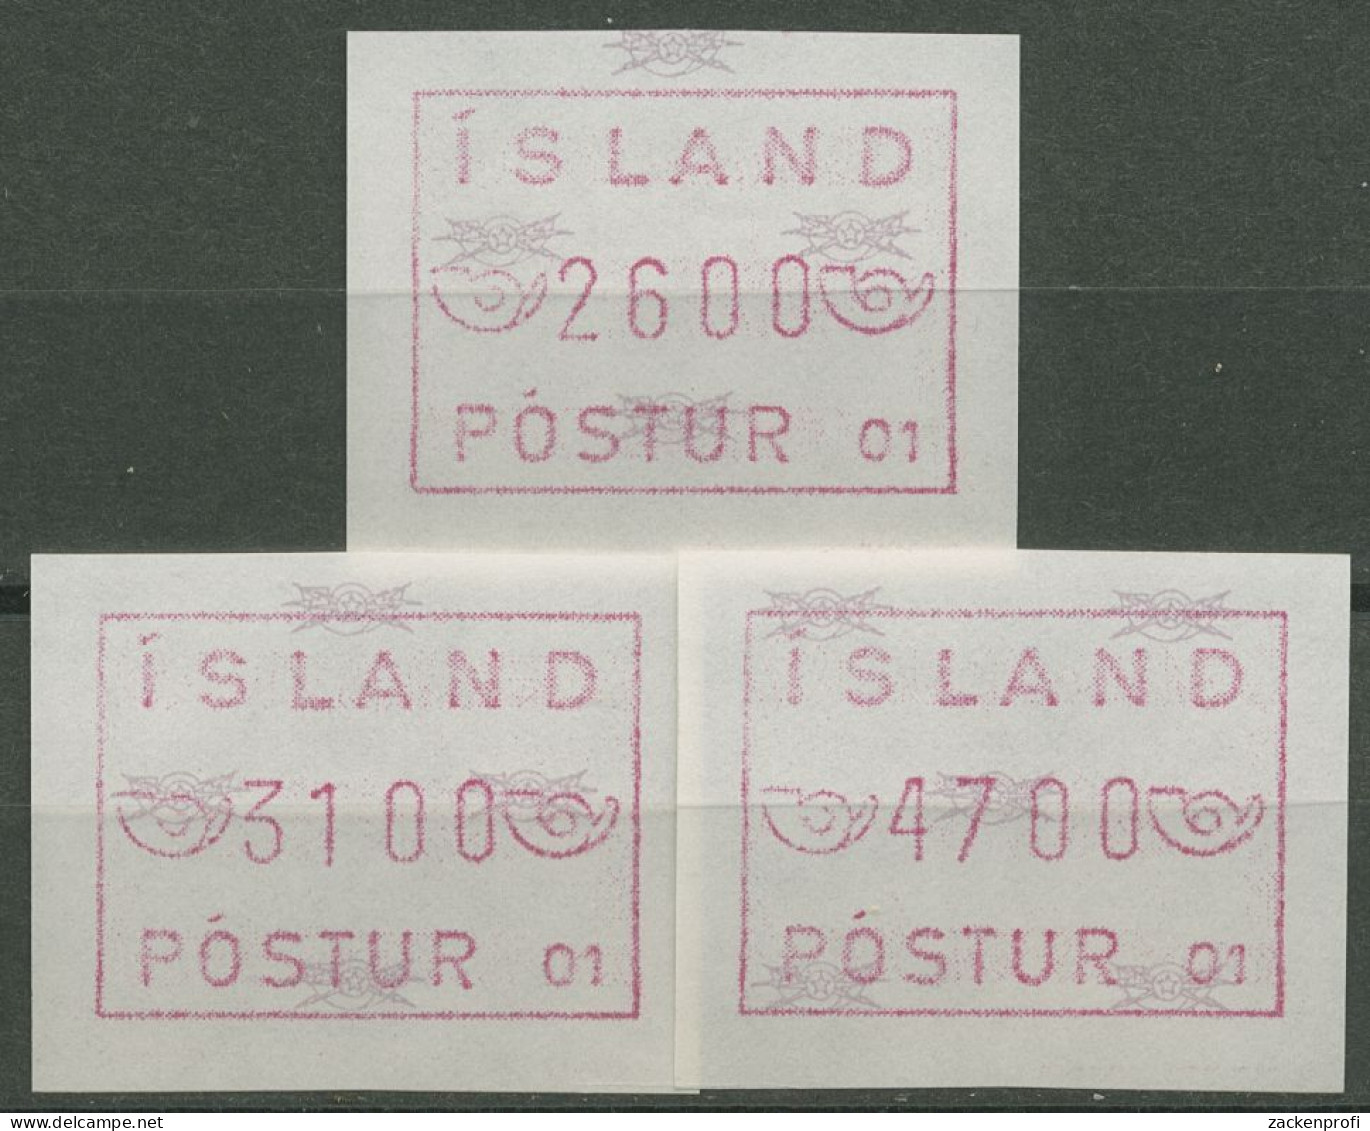 Island ATM 1983 Freimarke Automat 01, Satz 3 Werte, ATM 1.1.2 C S12 Postfrisch - Vignettes D'affranchissement (Frama)